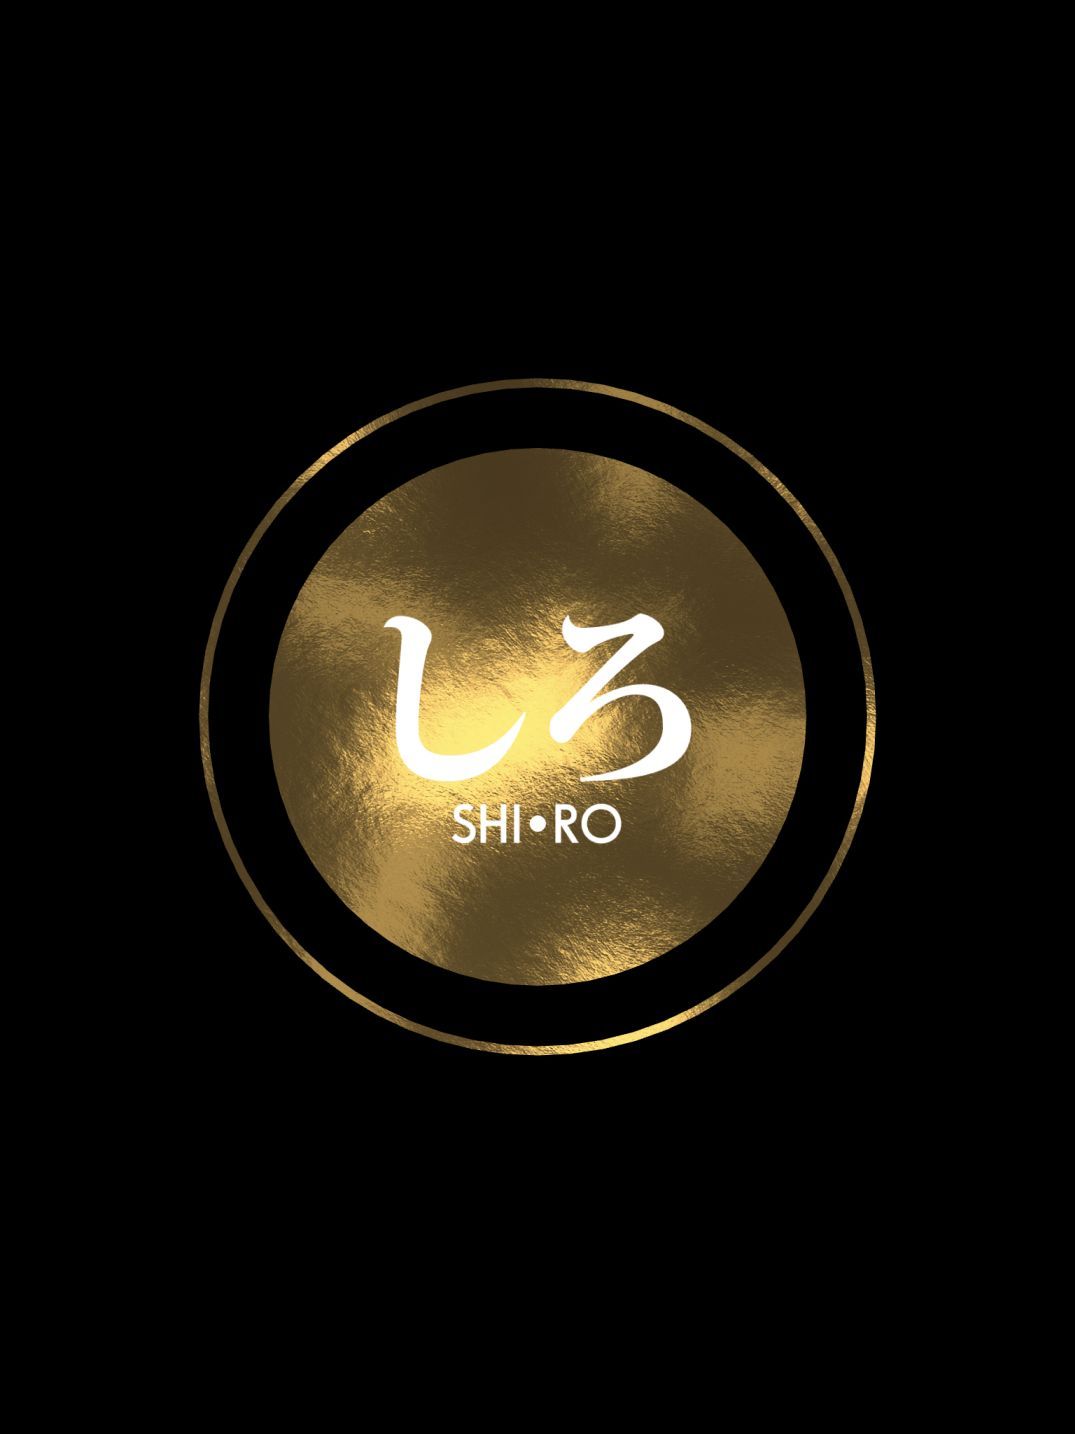 SHIRO (copie d'écran 1 sur iPhone / iPad)